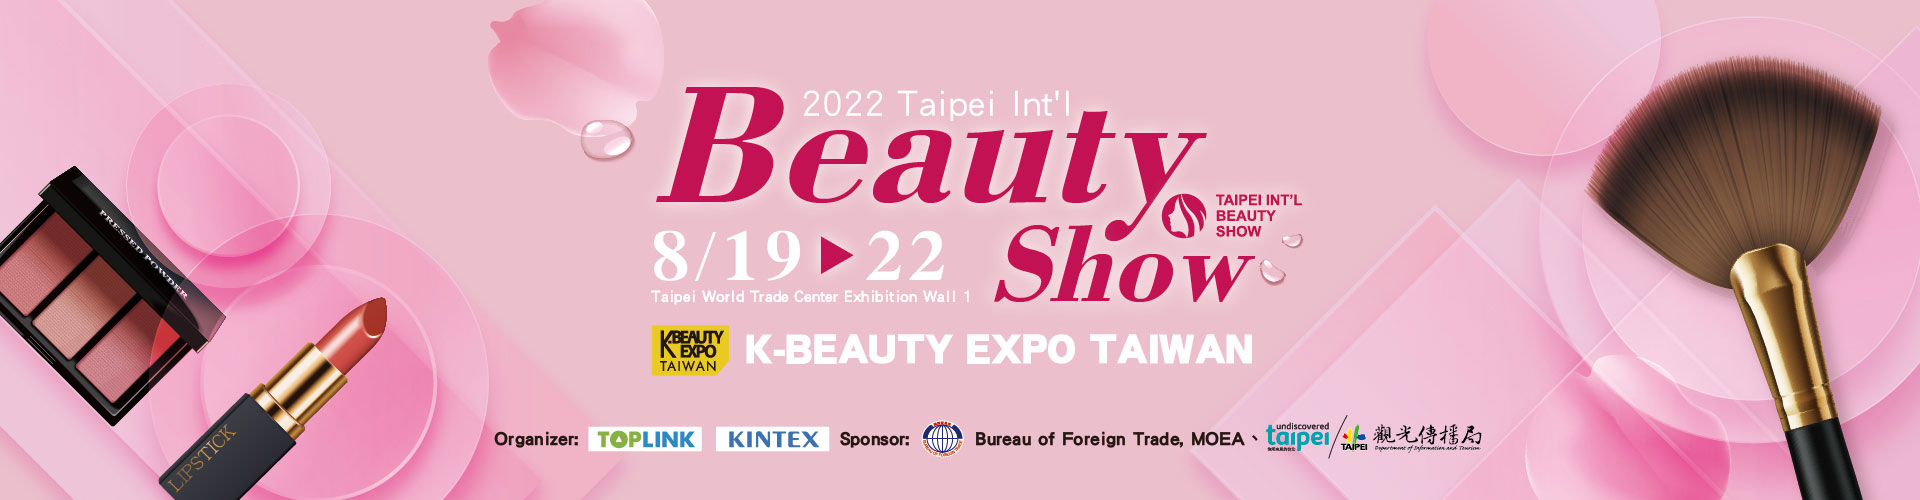 2022 Taipei In't Beauty Show & K-Beauty Expo